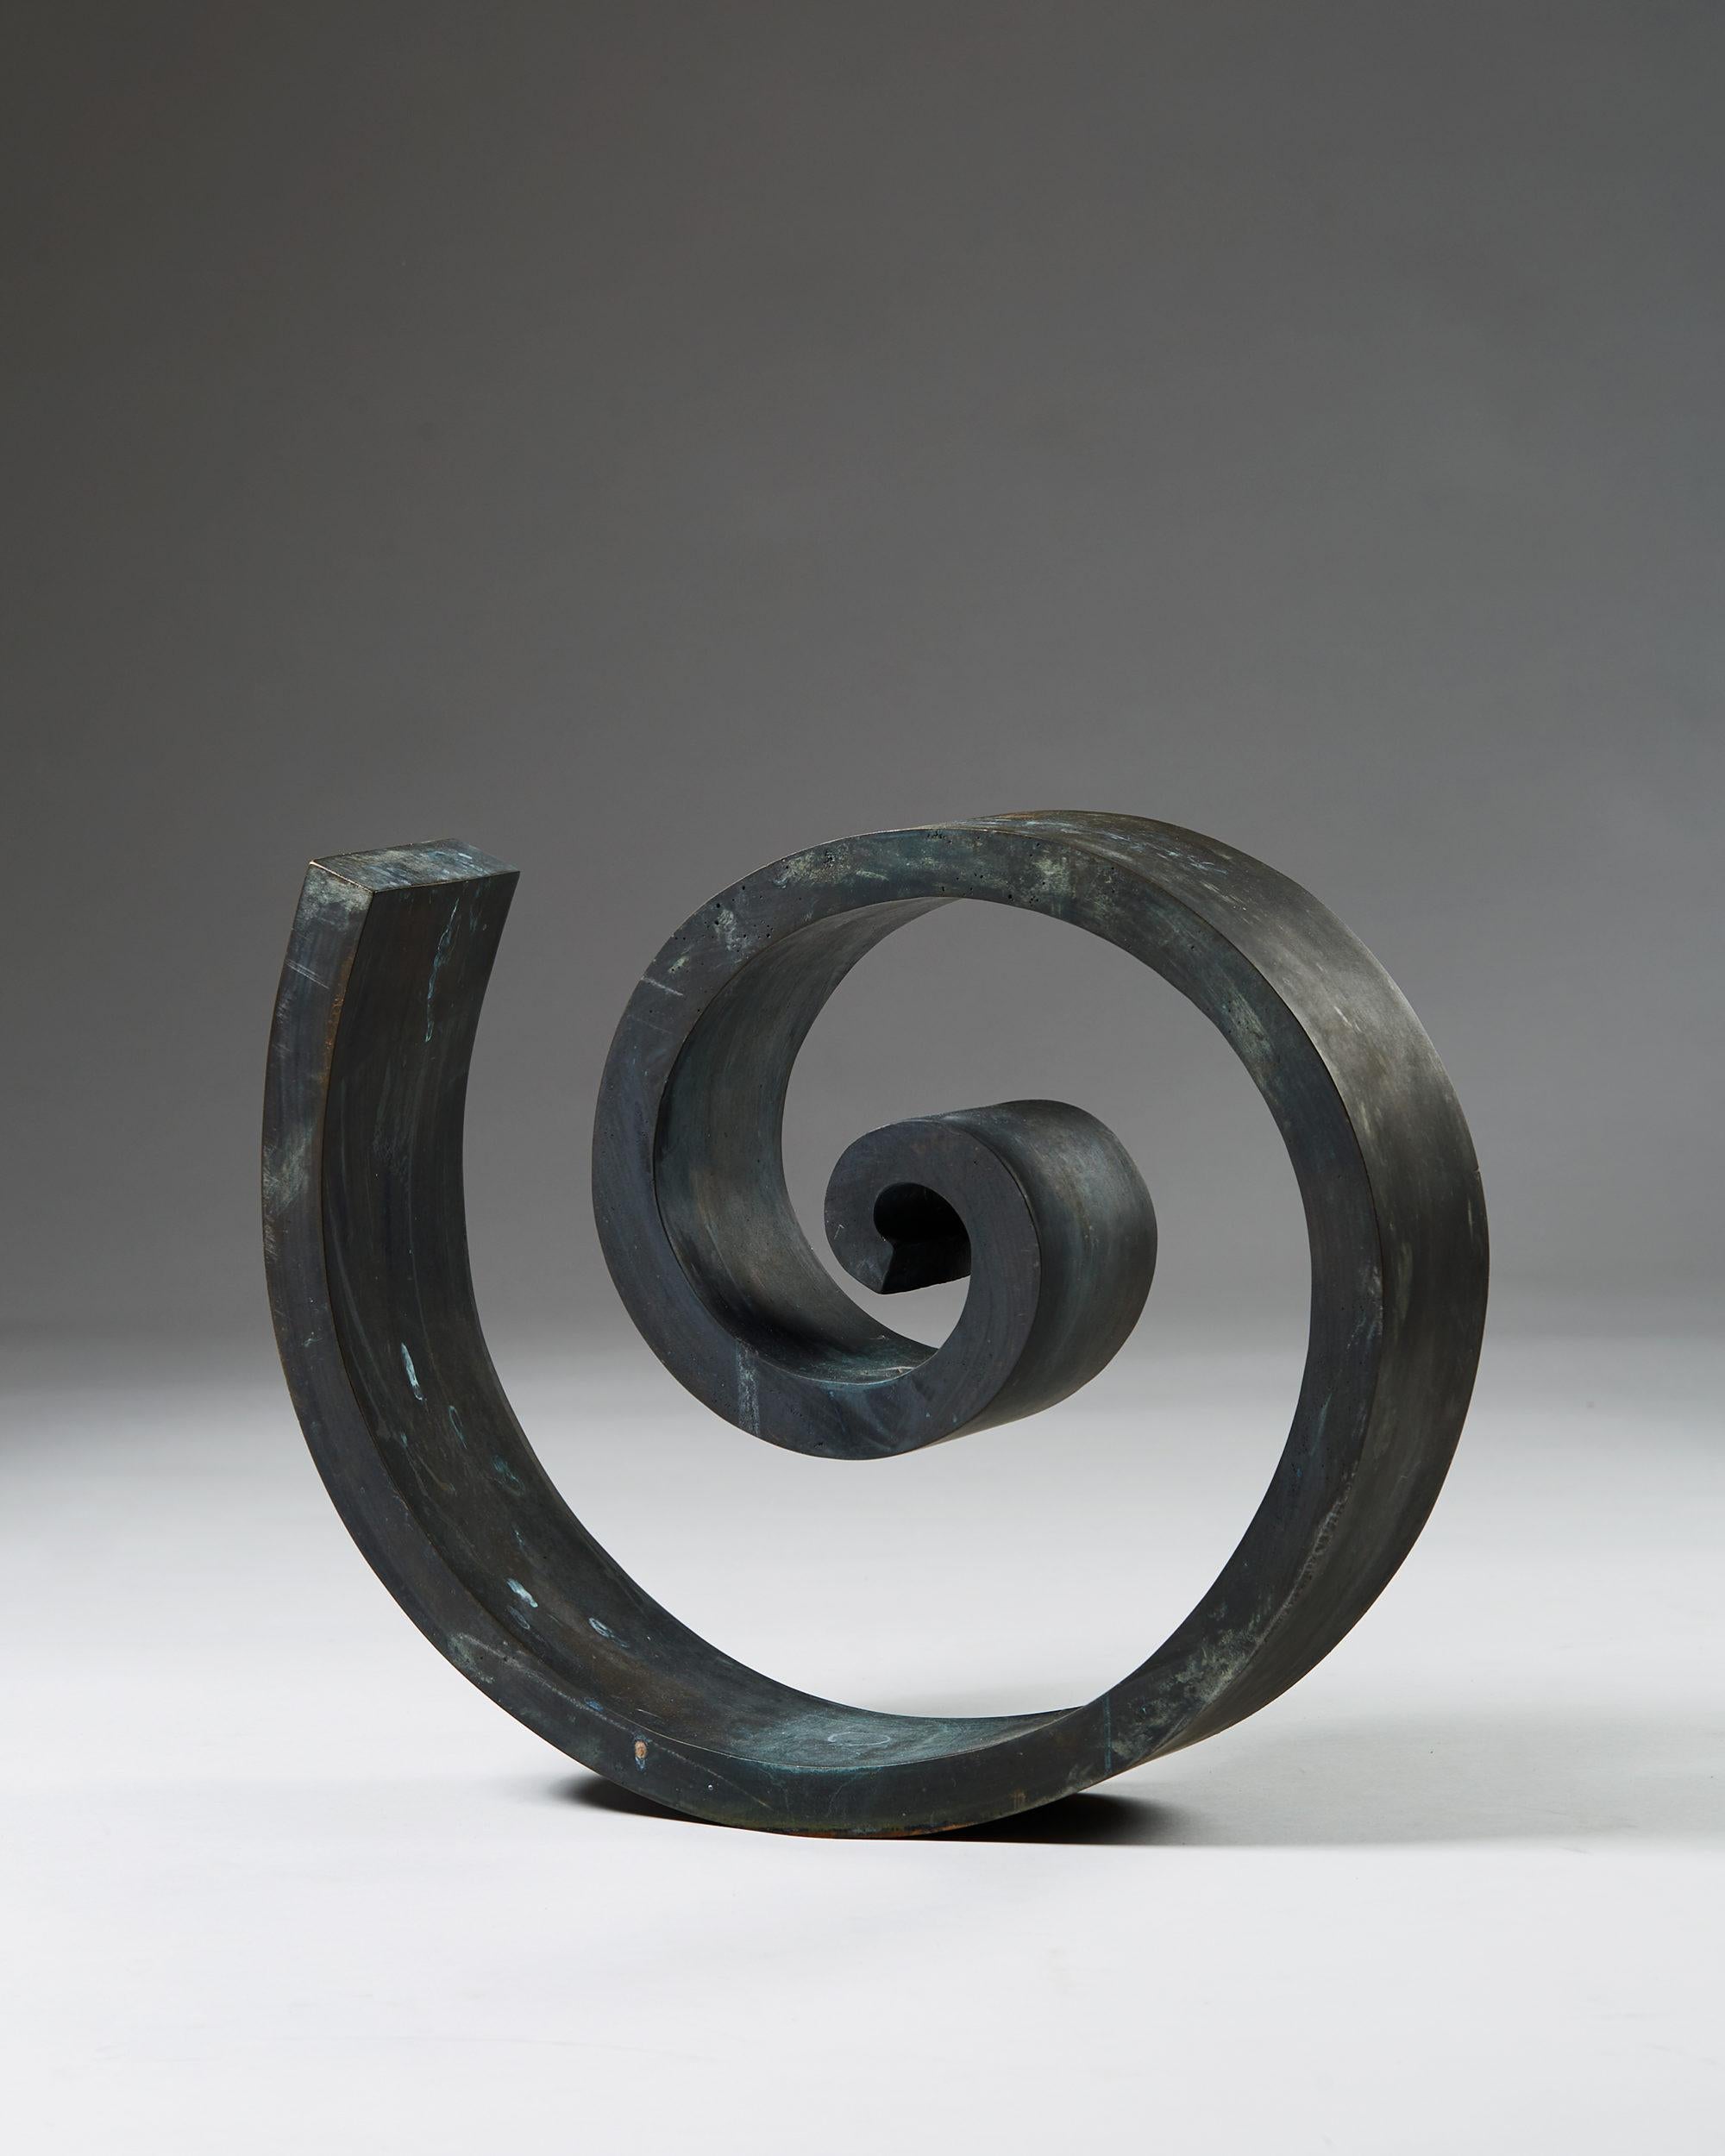 Sculpture de Nils G. Stenqvist,
Suède. 1950's.

Bronze.

Une pièce unique.

Dimensions :
H : 38 cm / 1' 2